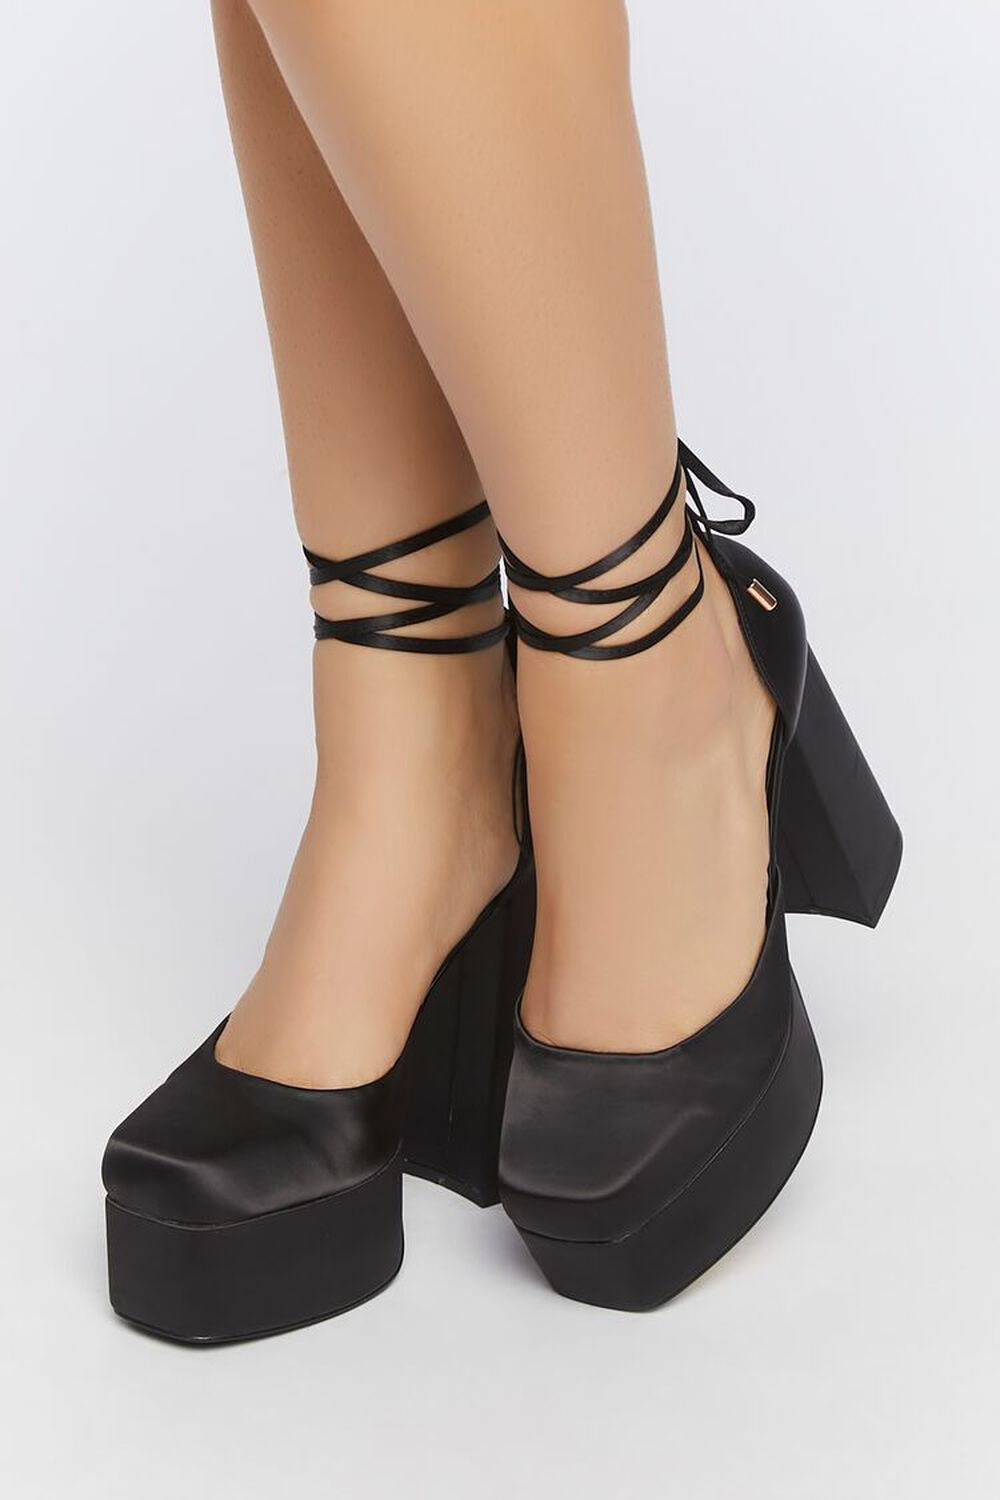 BLACK Satin Lace-Up Platform Heels, image 1